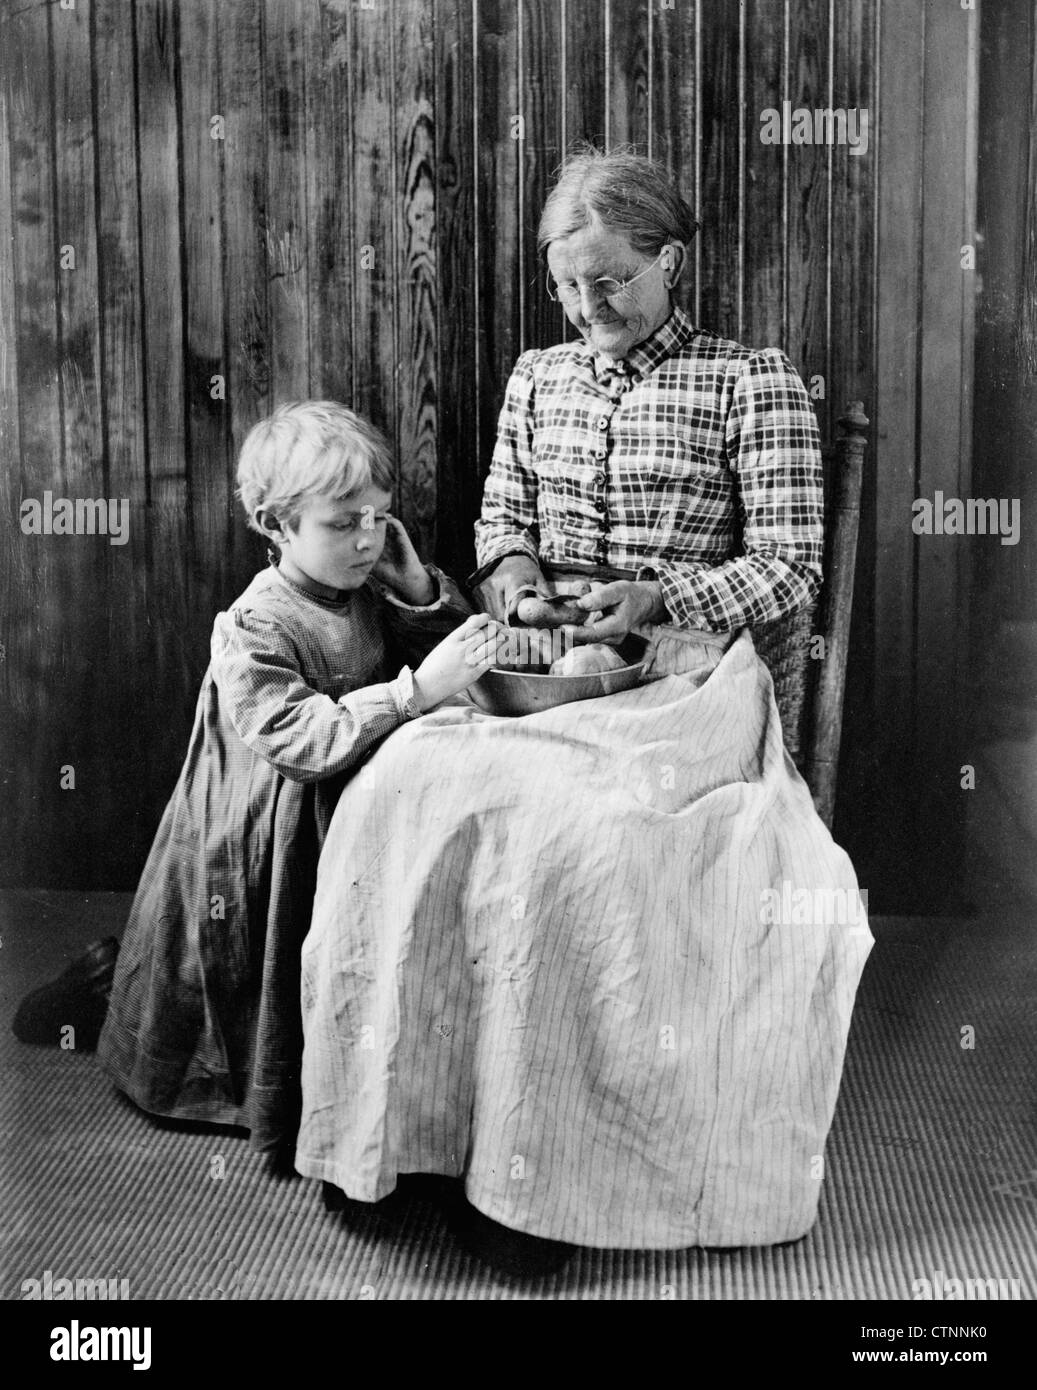 Vorfreude - eine ältere Frau sitzt in einem Stuhl Kartoffelschälen mit einem jungen Mädchen, möglicherweise eine Enkelin, kniend auf dem Boden neben ihr, gerade, ca. 1897 Stockfoto